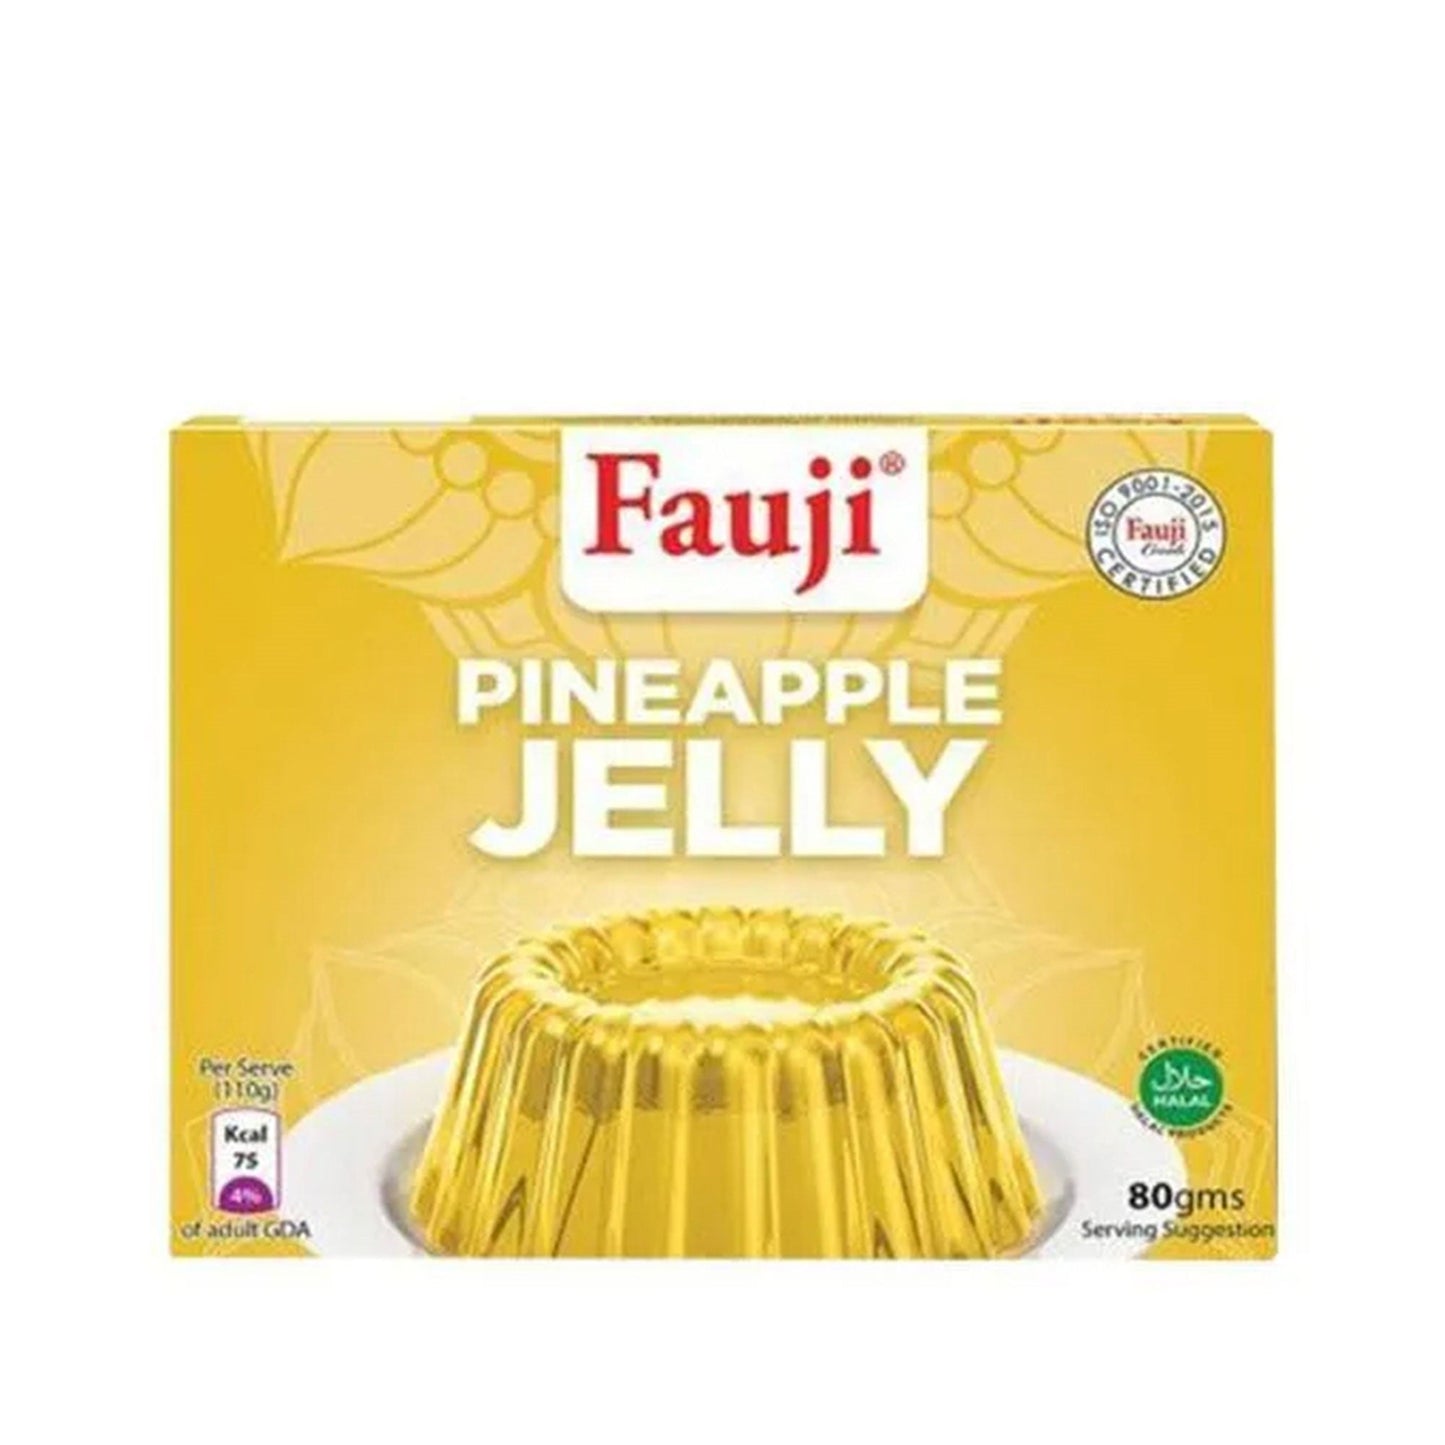 Fauji Pineapple Jelly 80g